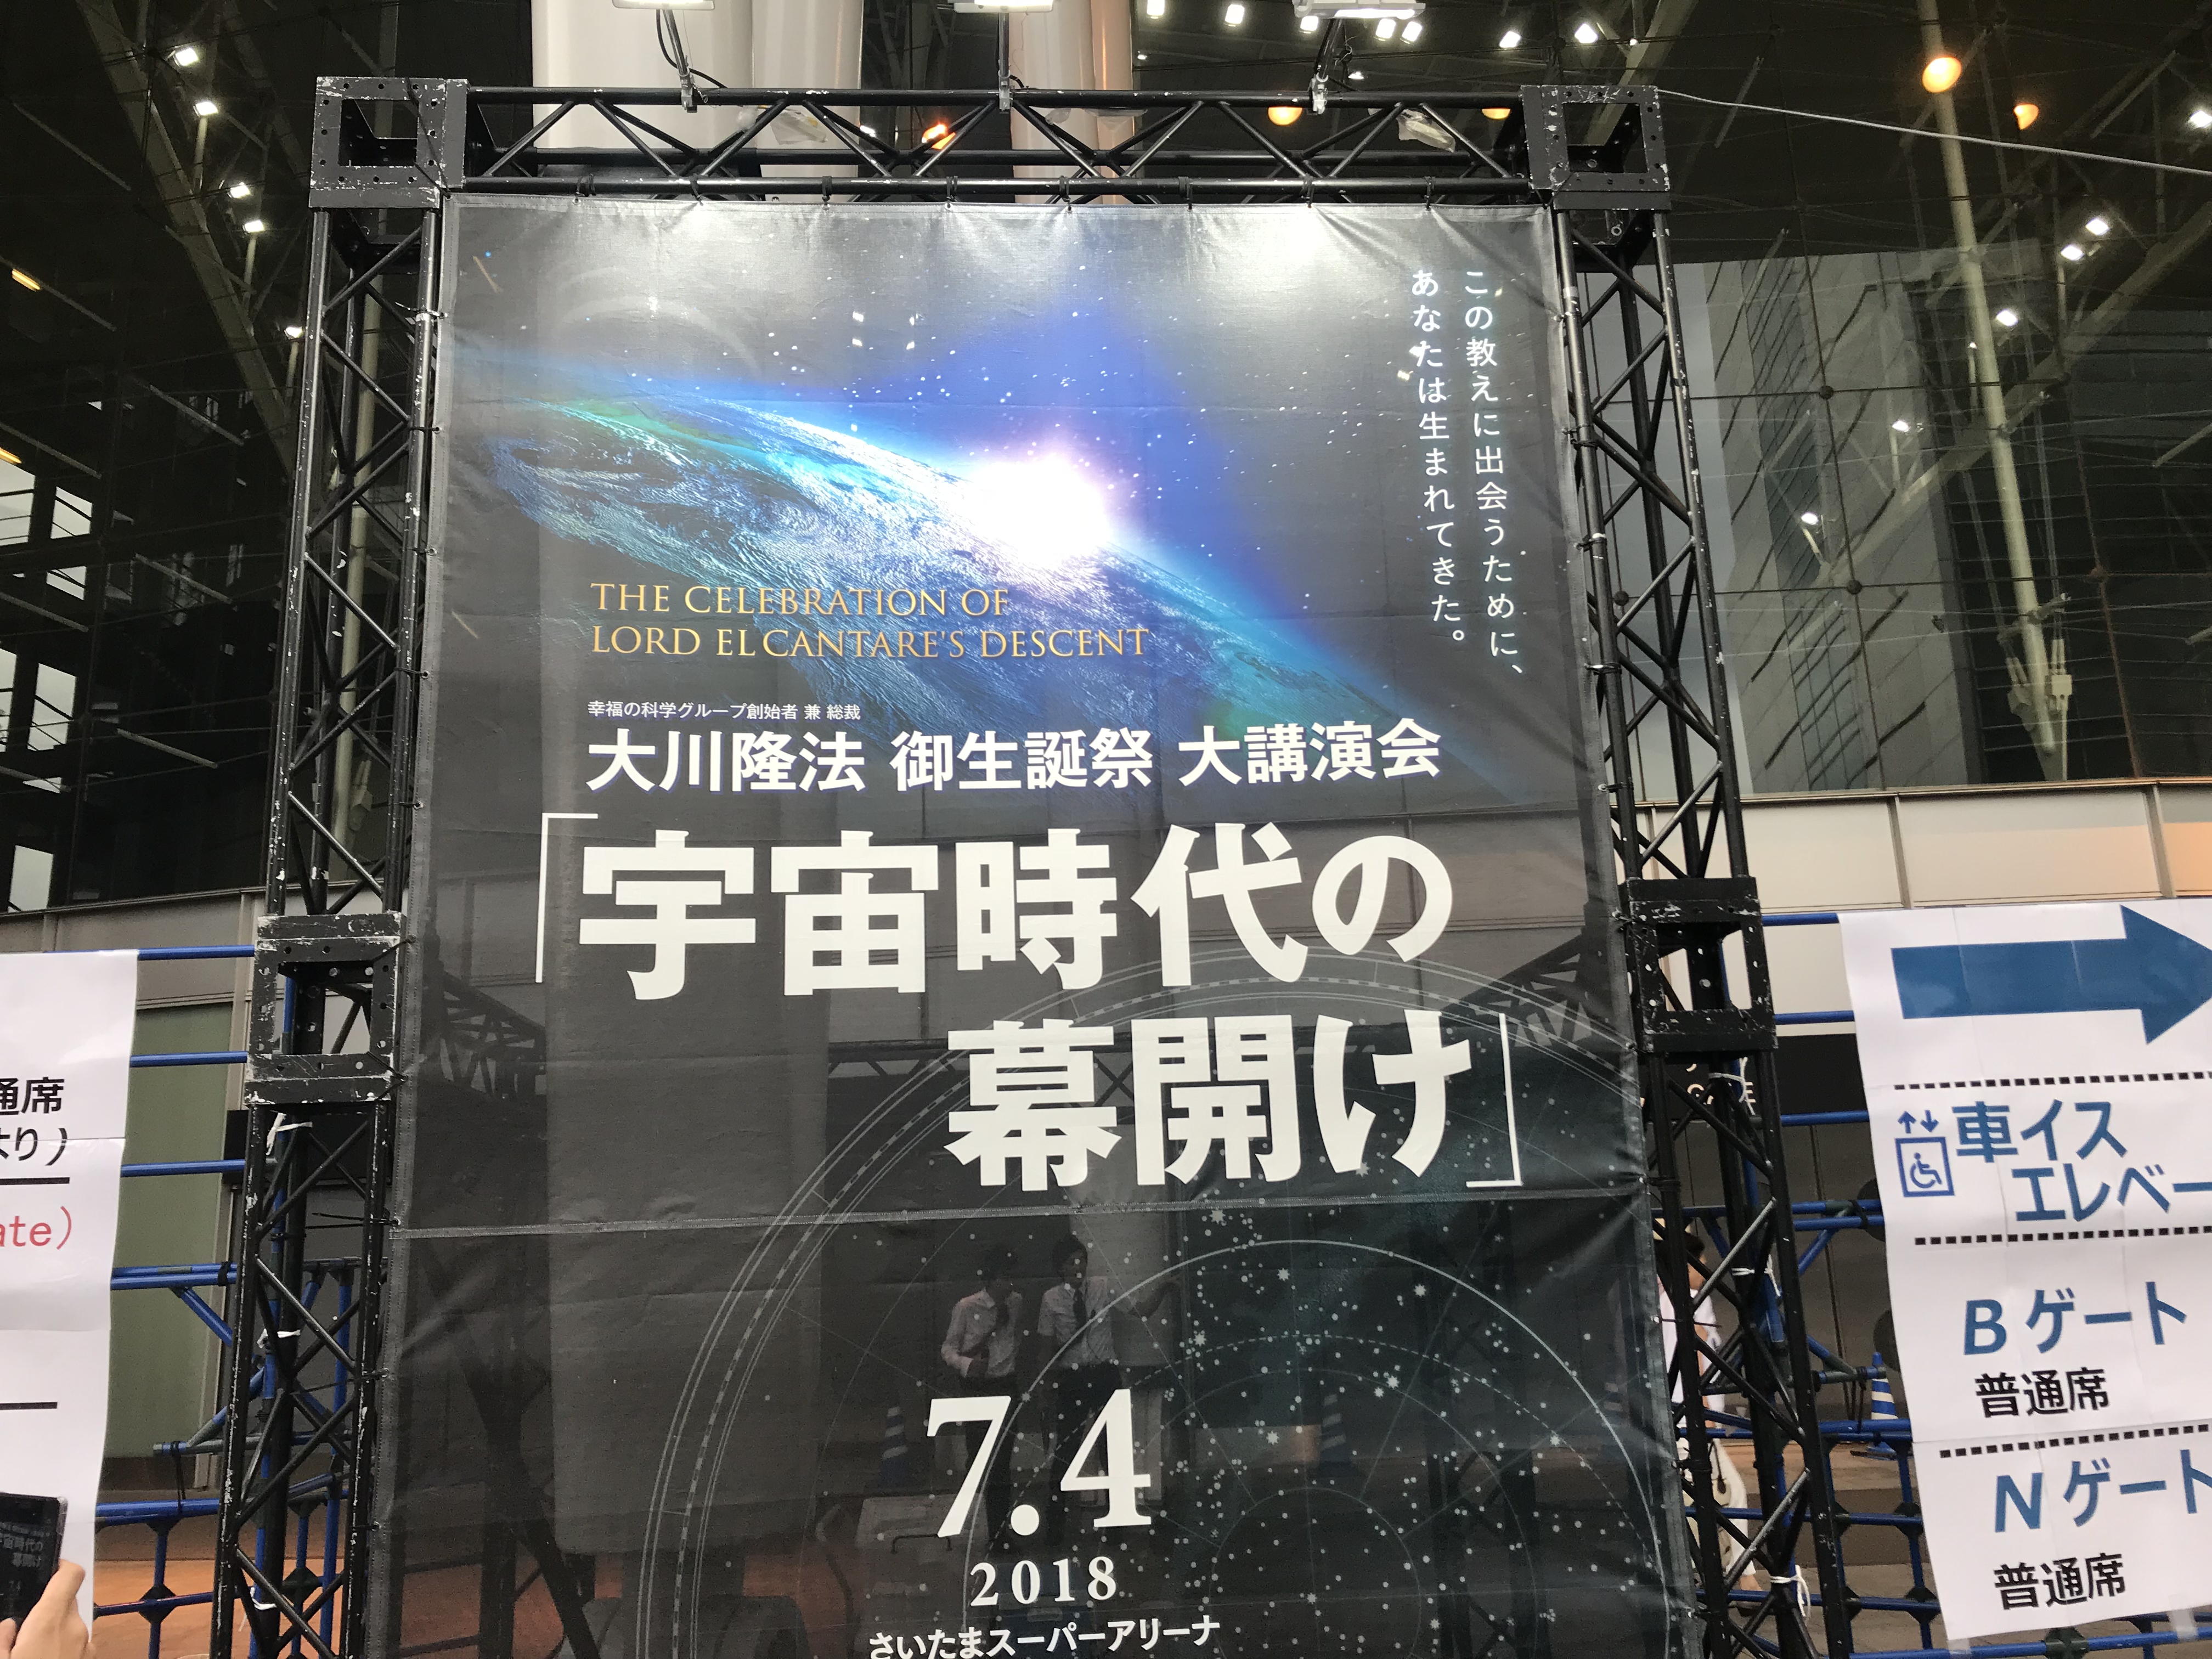 2018年大川隆法 御生誕祭大講演会「宇宙時代の幕開け」